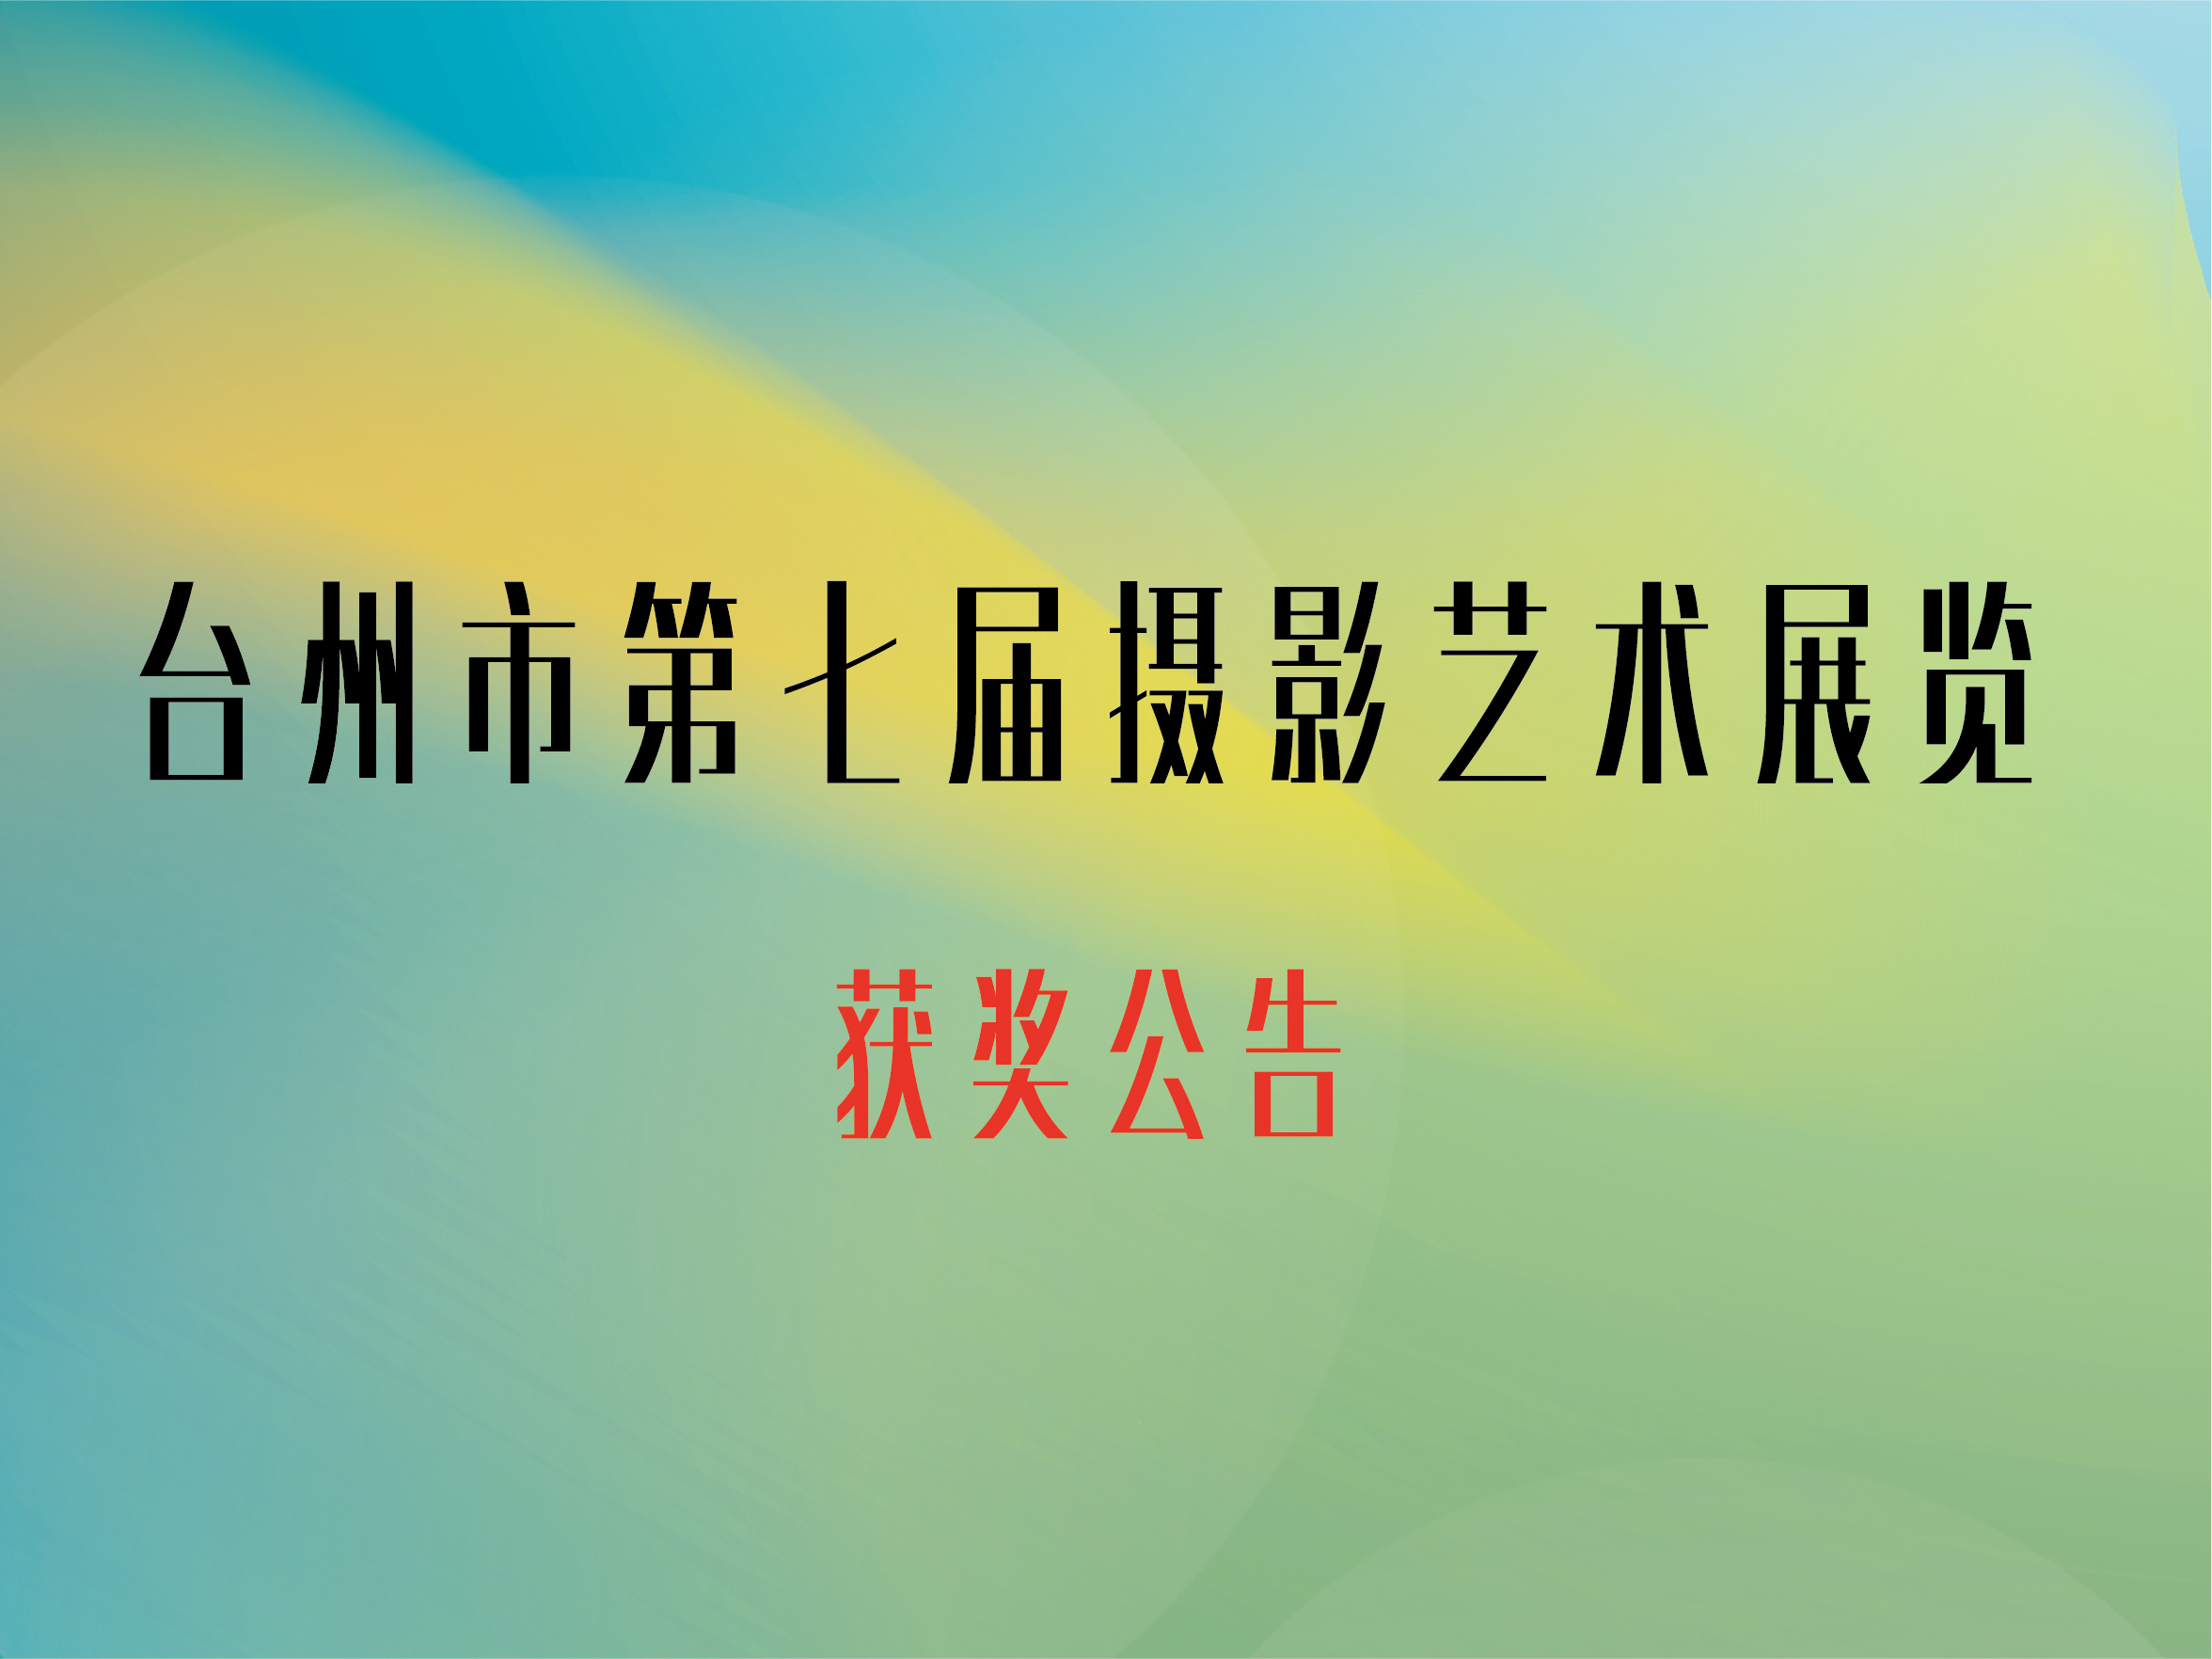 市展入选公告 | 台州市第七届摄影艺术展览获奖名单